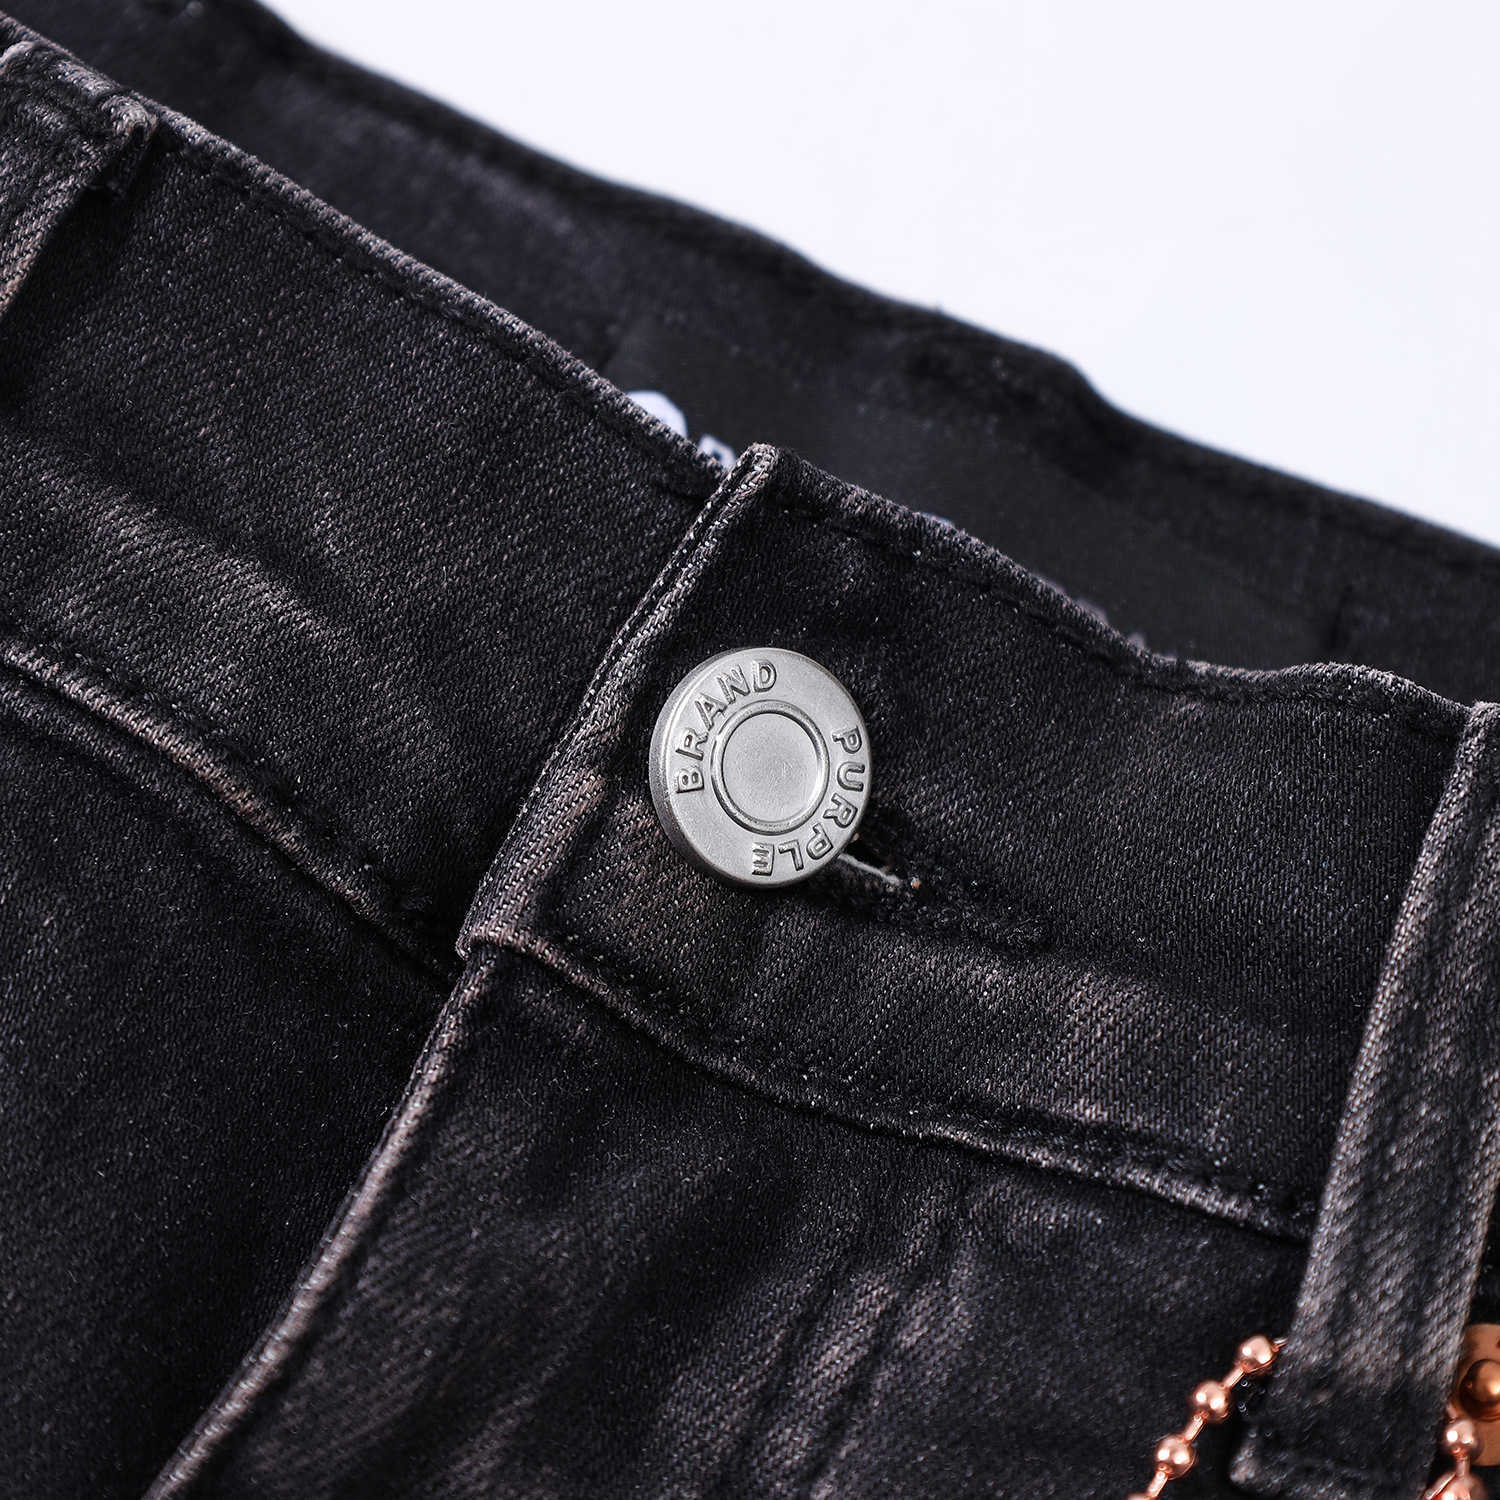 designer amirssNew Purple Brand Black Cracked Jeans personnalisés pour hommes